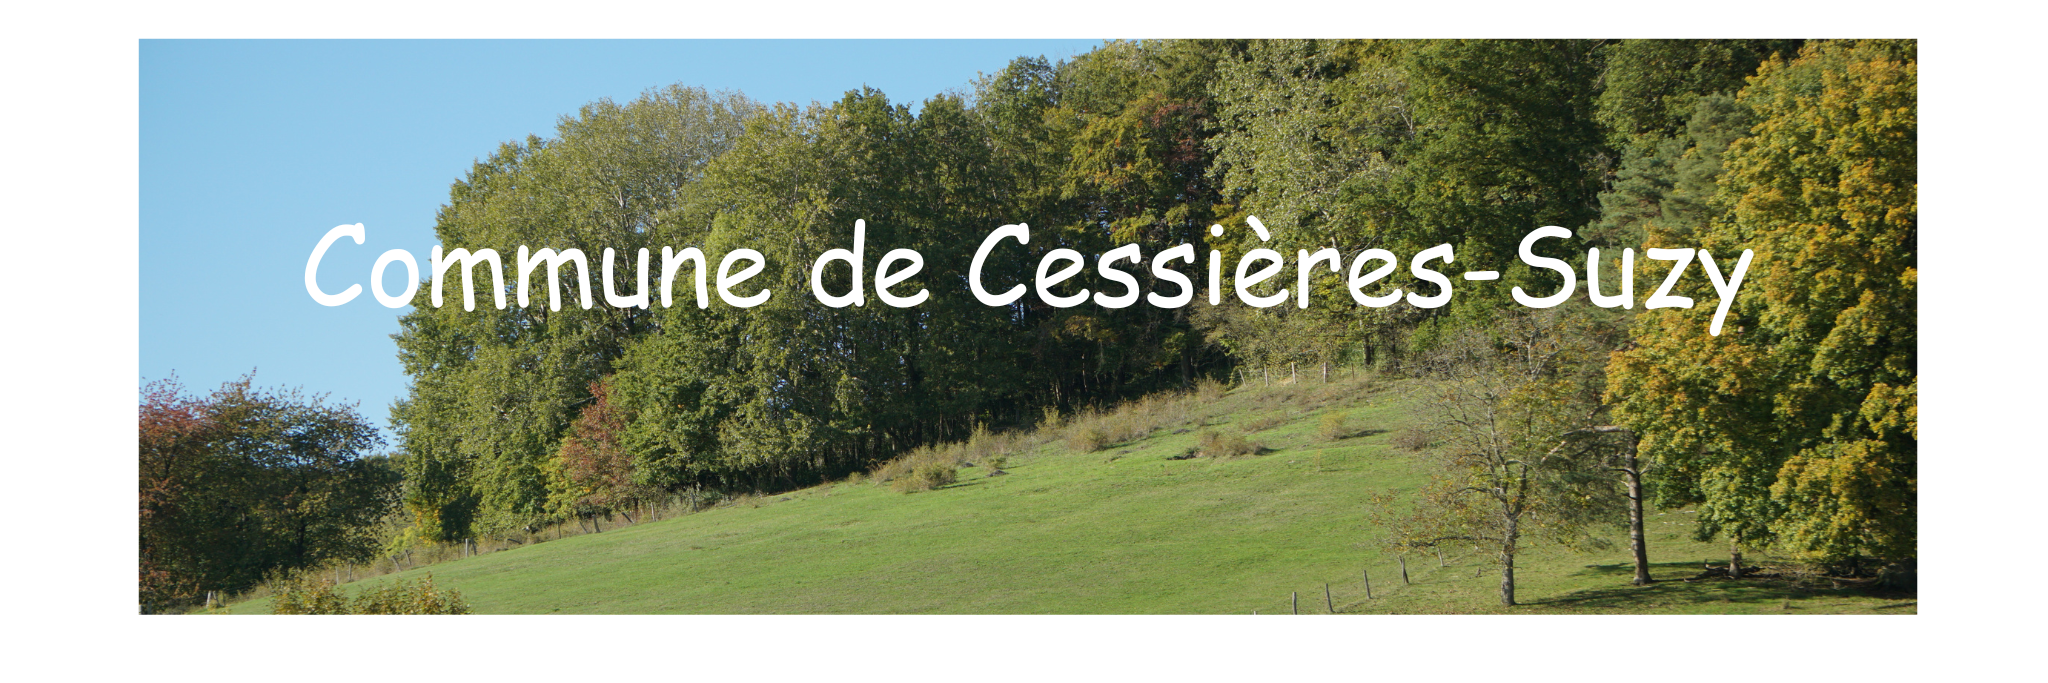 Commune de Cessières-Suzy